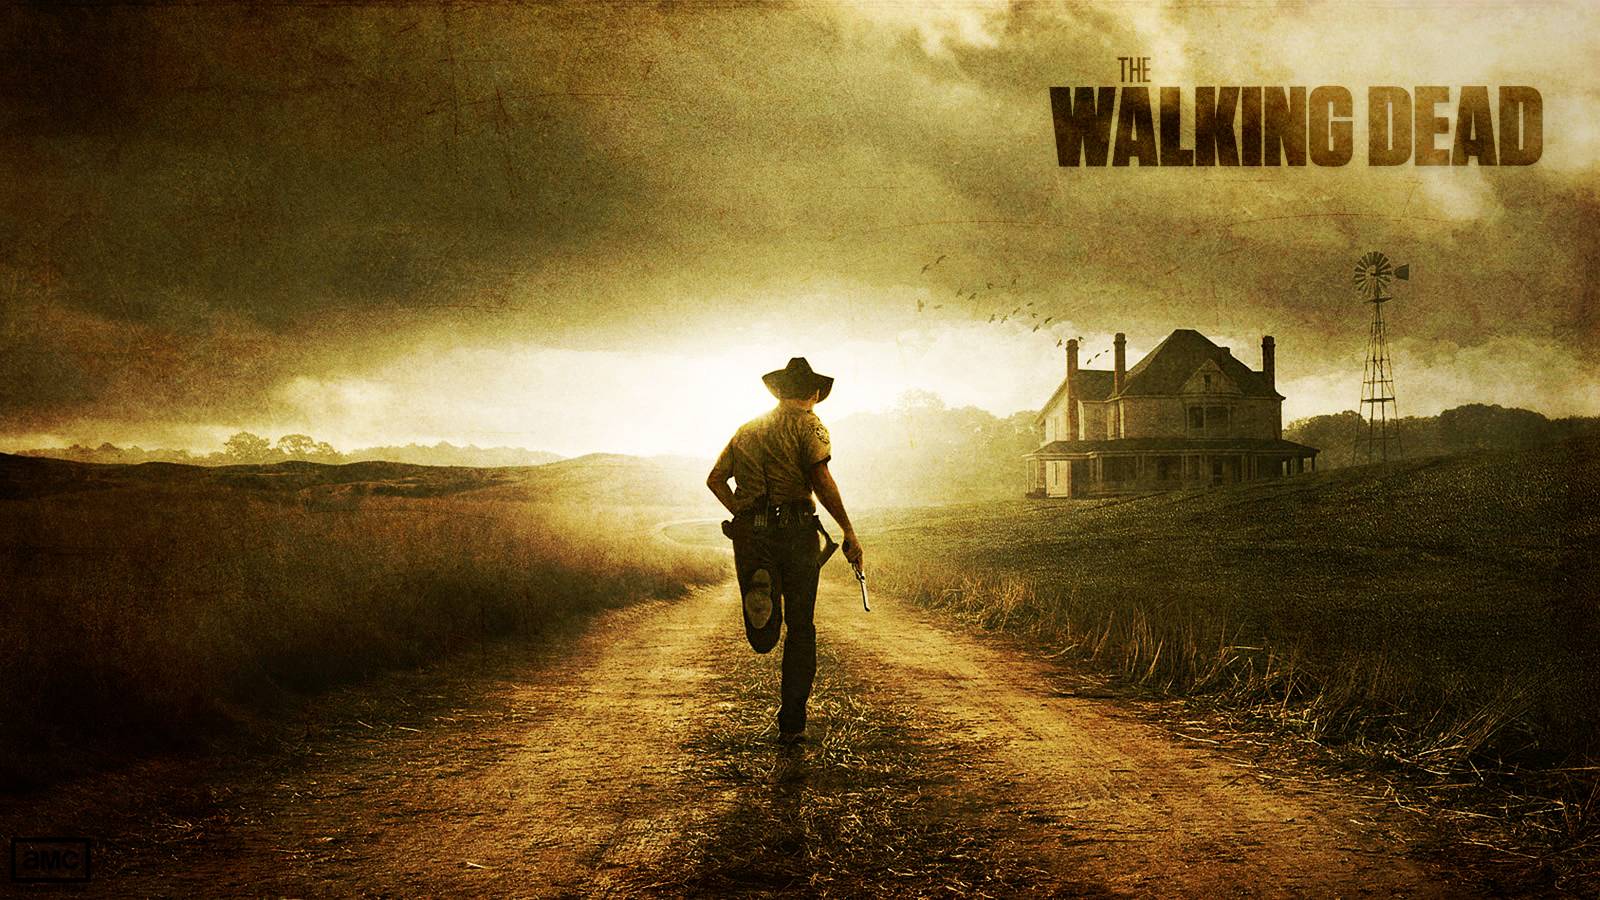 Walking Dead Wallpaper 1080p